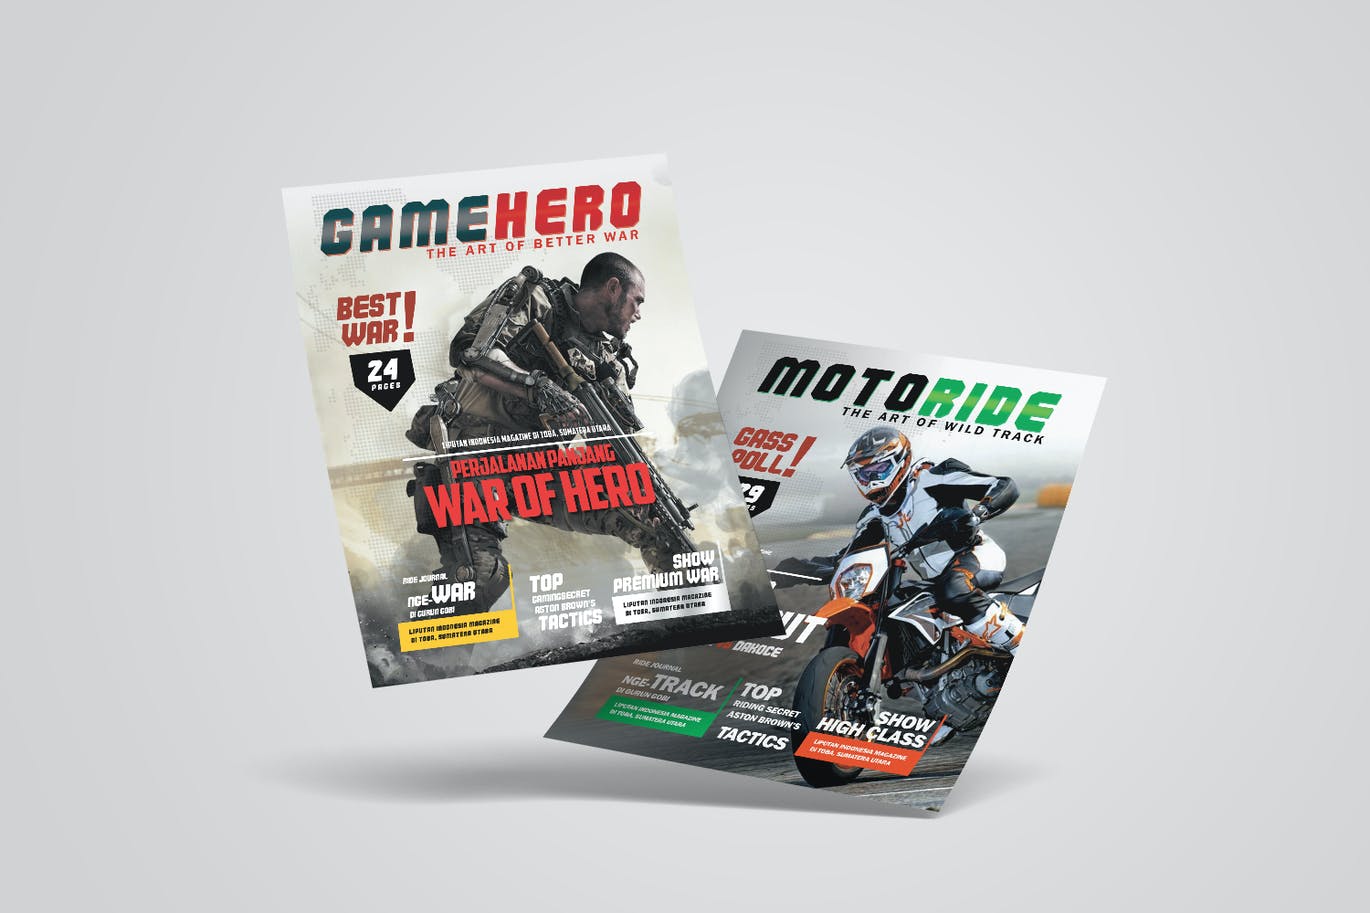 摩托车手运动和战争游戏传单设计模板 Motor Biker Sports and Game War Flyer 设计素材 第3张